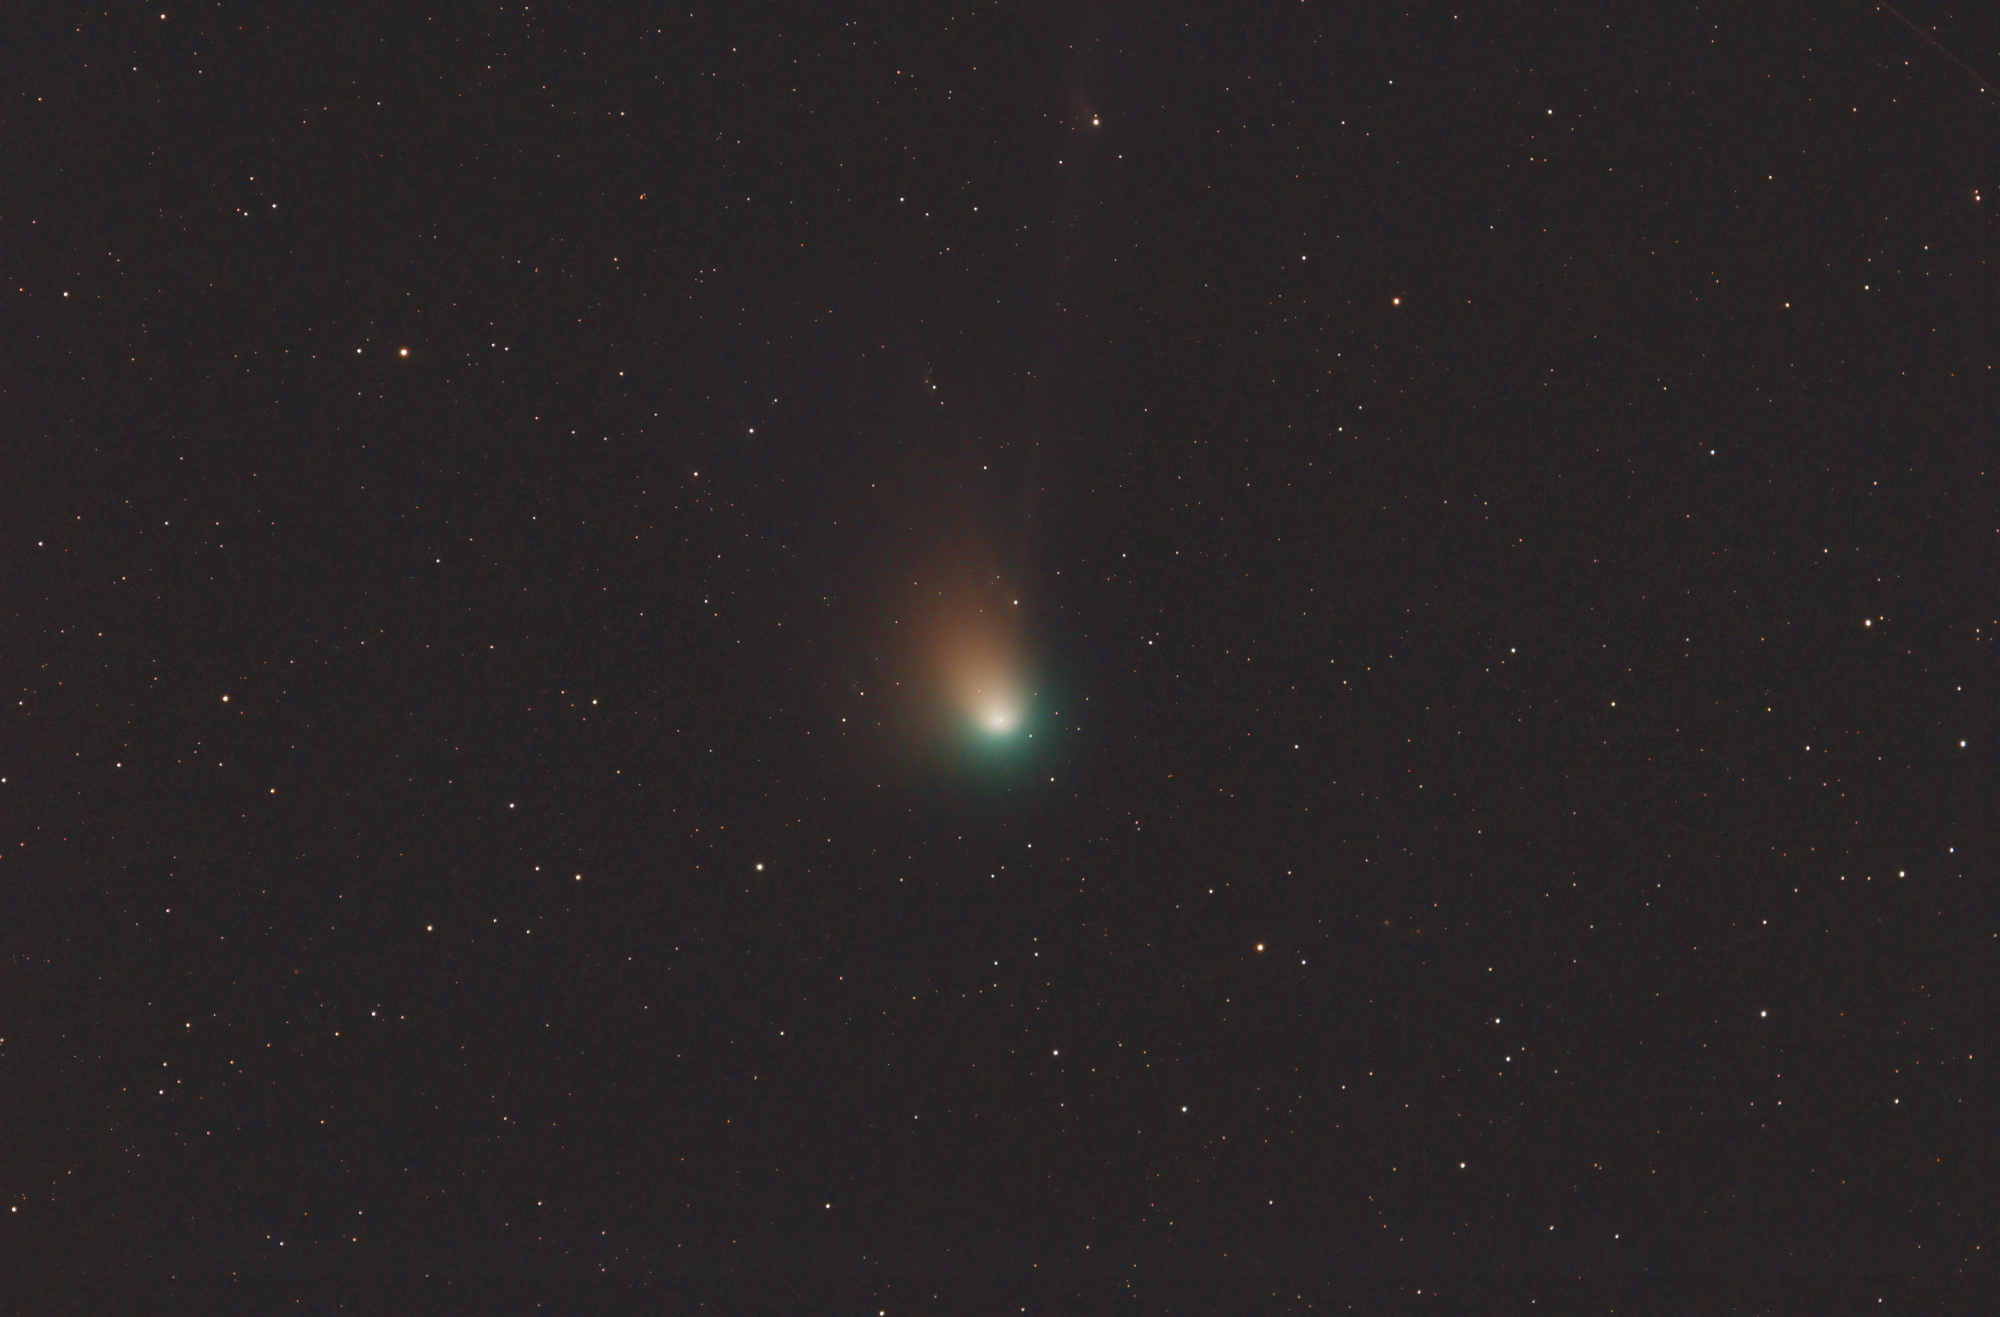 Comete_C_2022_E_(ZTF)_V01.thumb.jpg.740d9787925fb66706931c084a7d169c.jpg